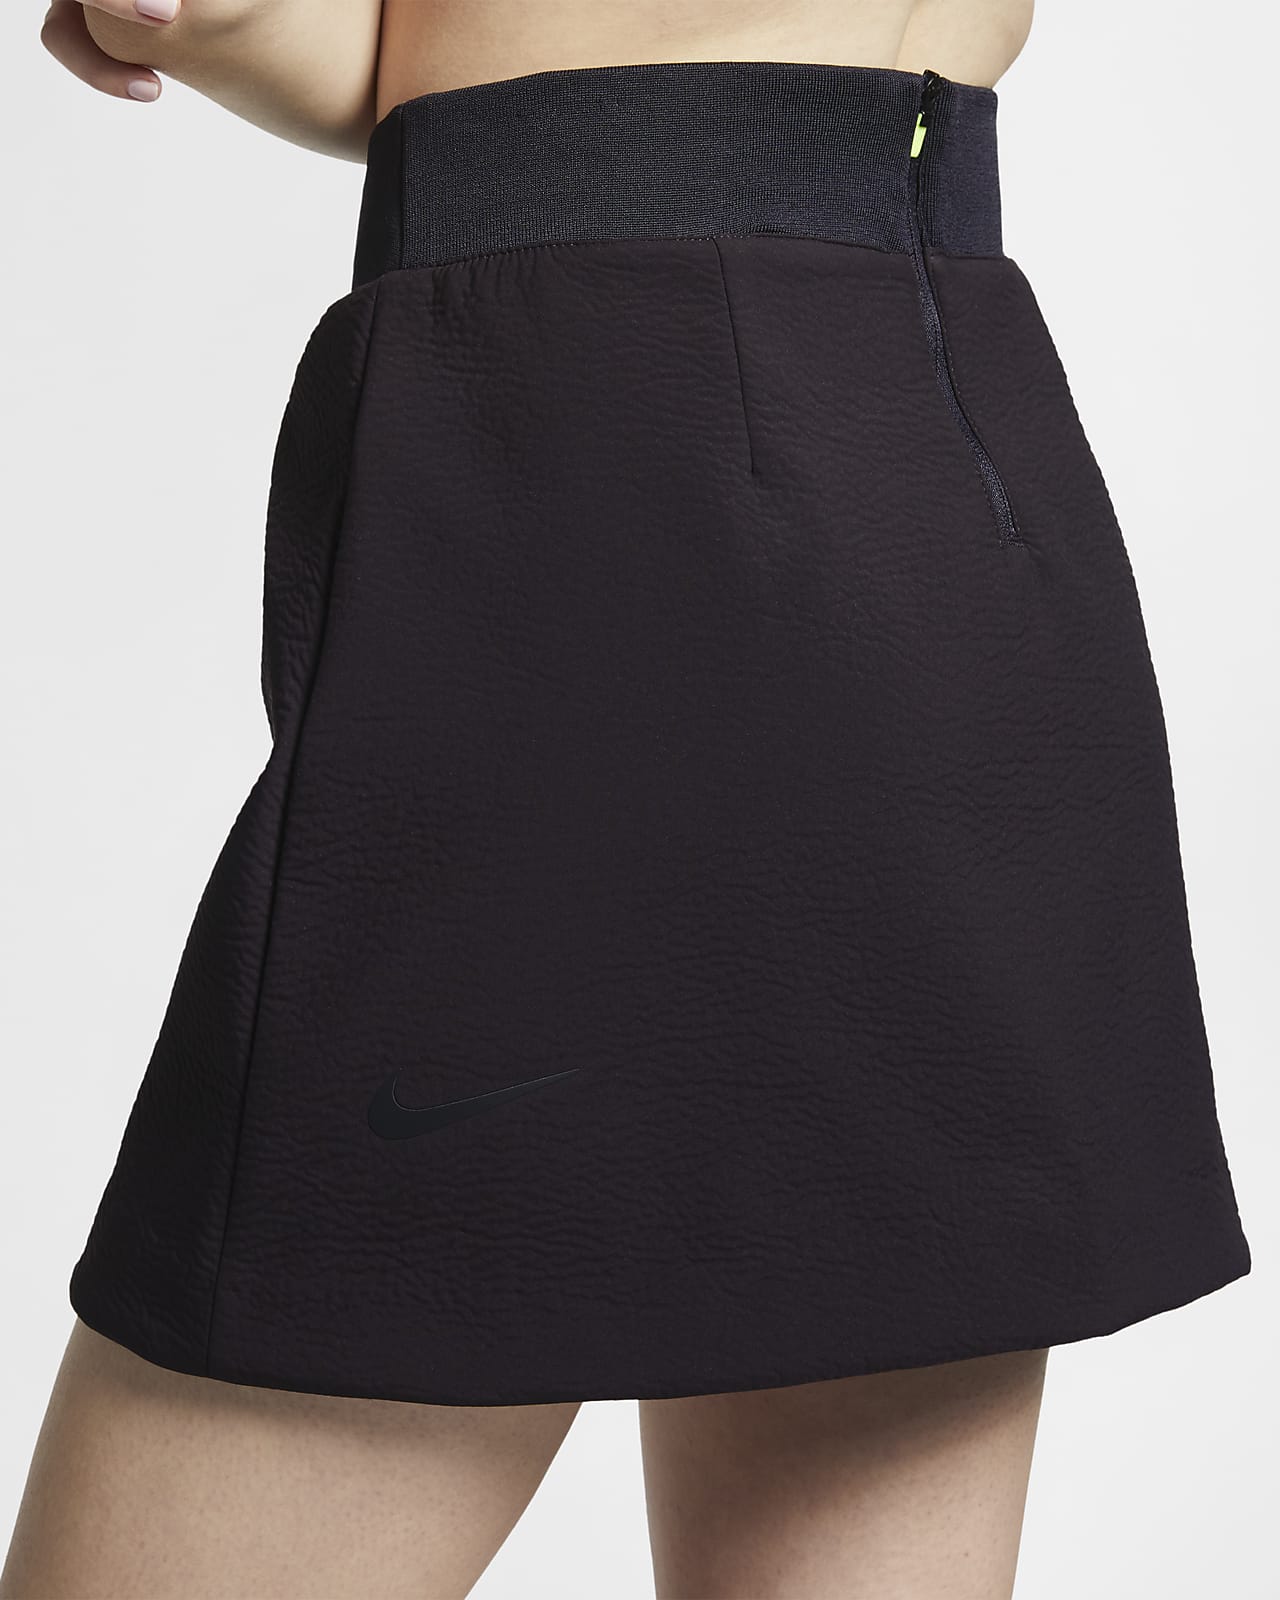 Nike Sportswear Tech Pack Women's Skirt. Nike IL